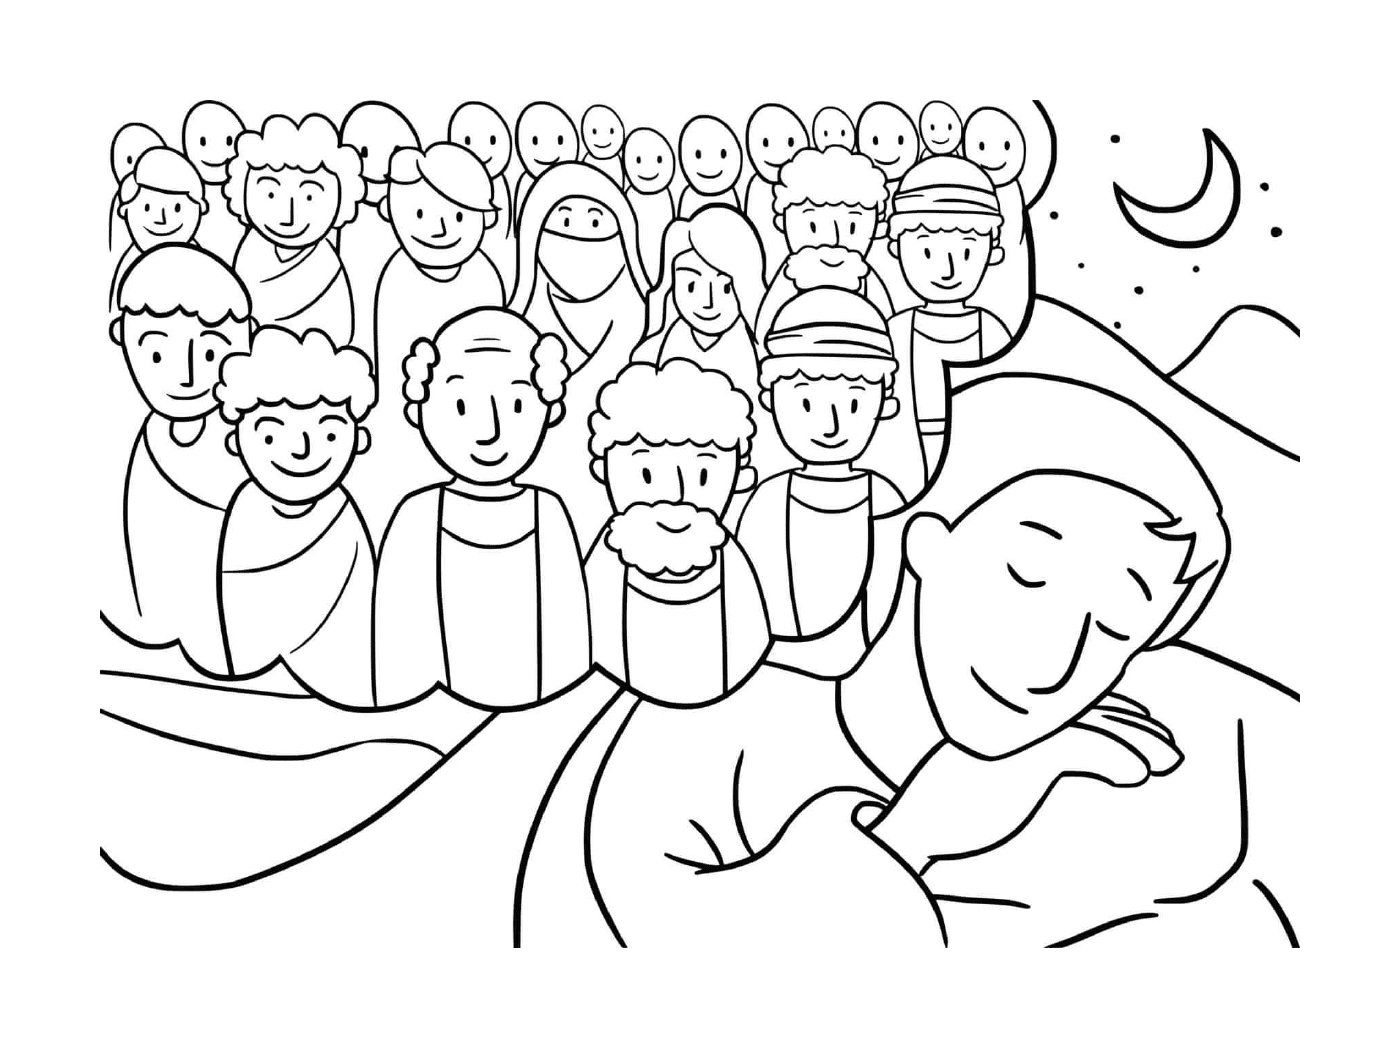   Groupe de personnes rassemblées autour d'un homme qui dort 